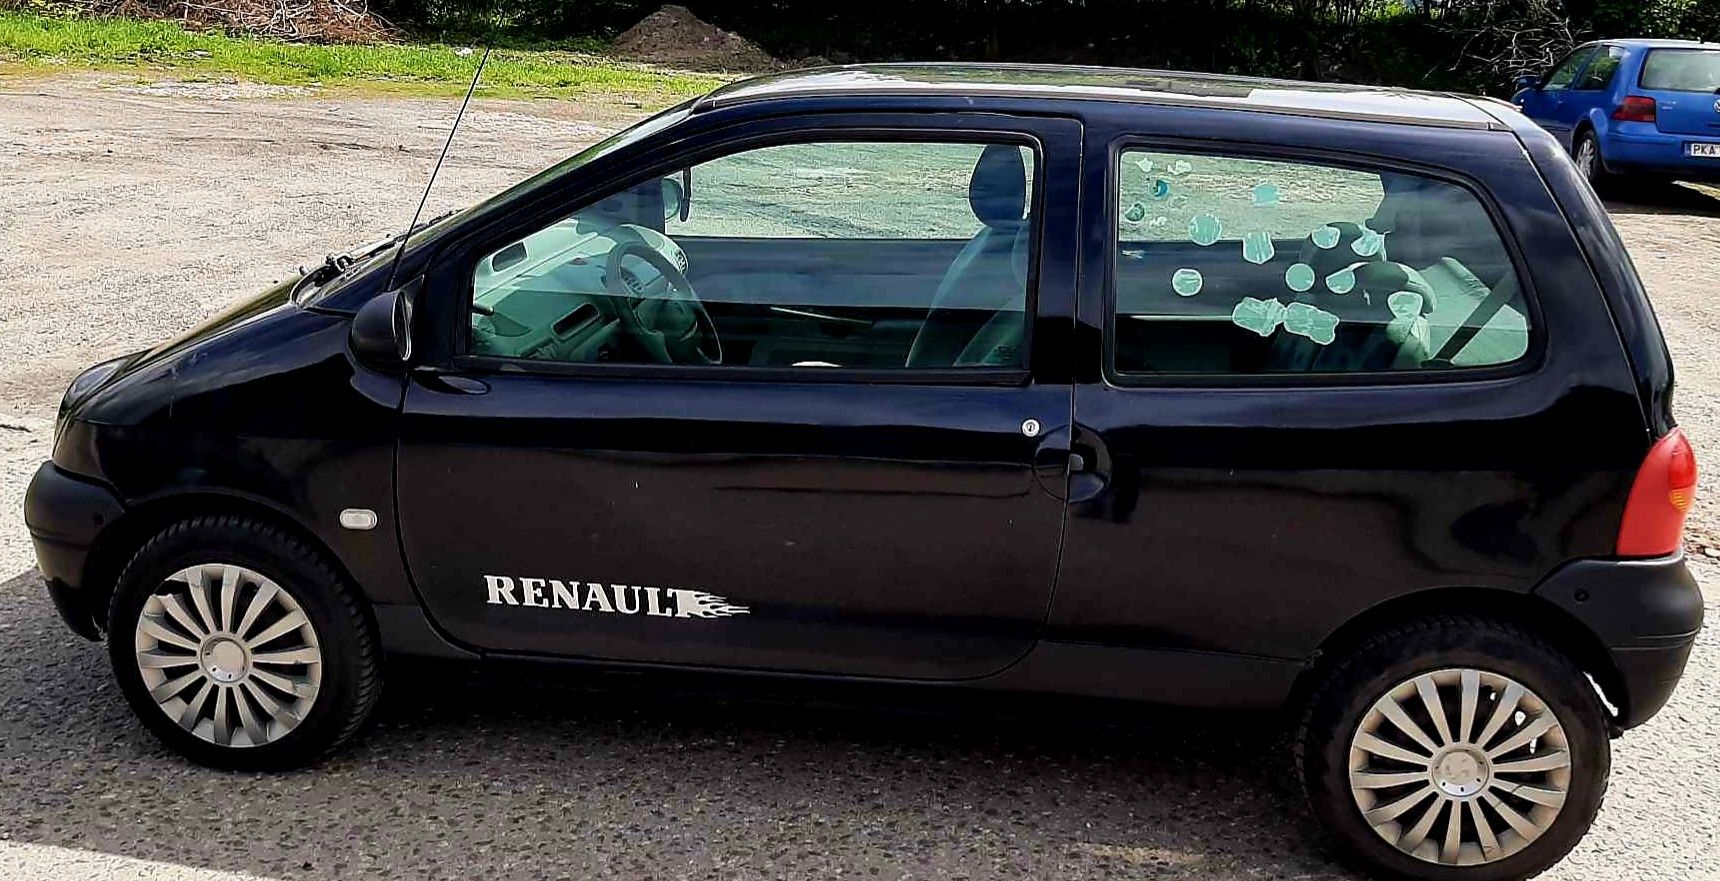 Renault Twingo 1,2 benzyna,  nowy przegląd